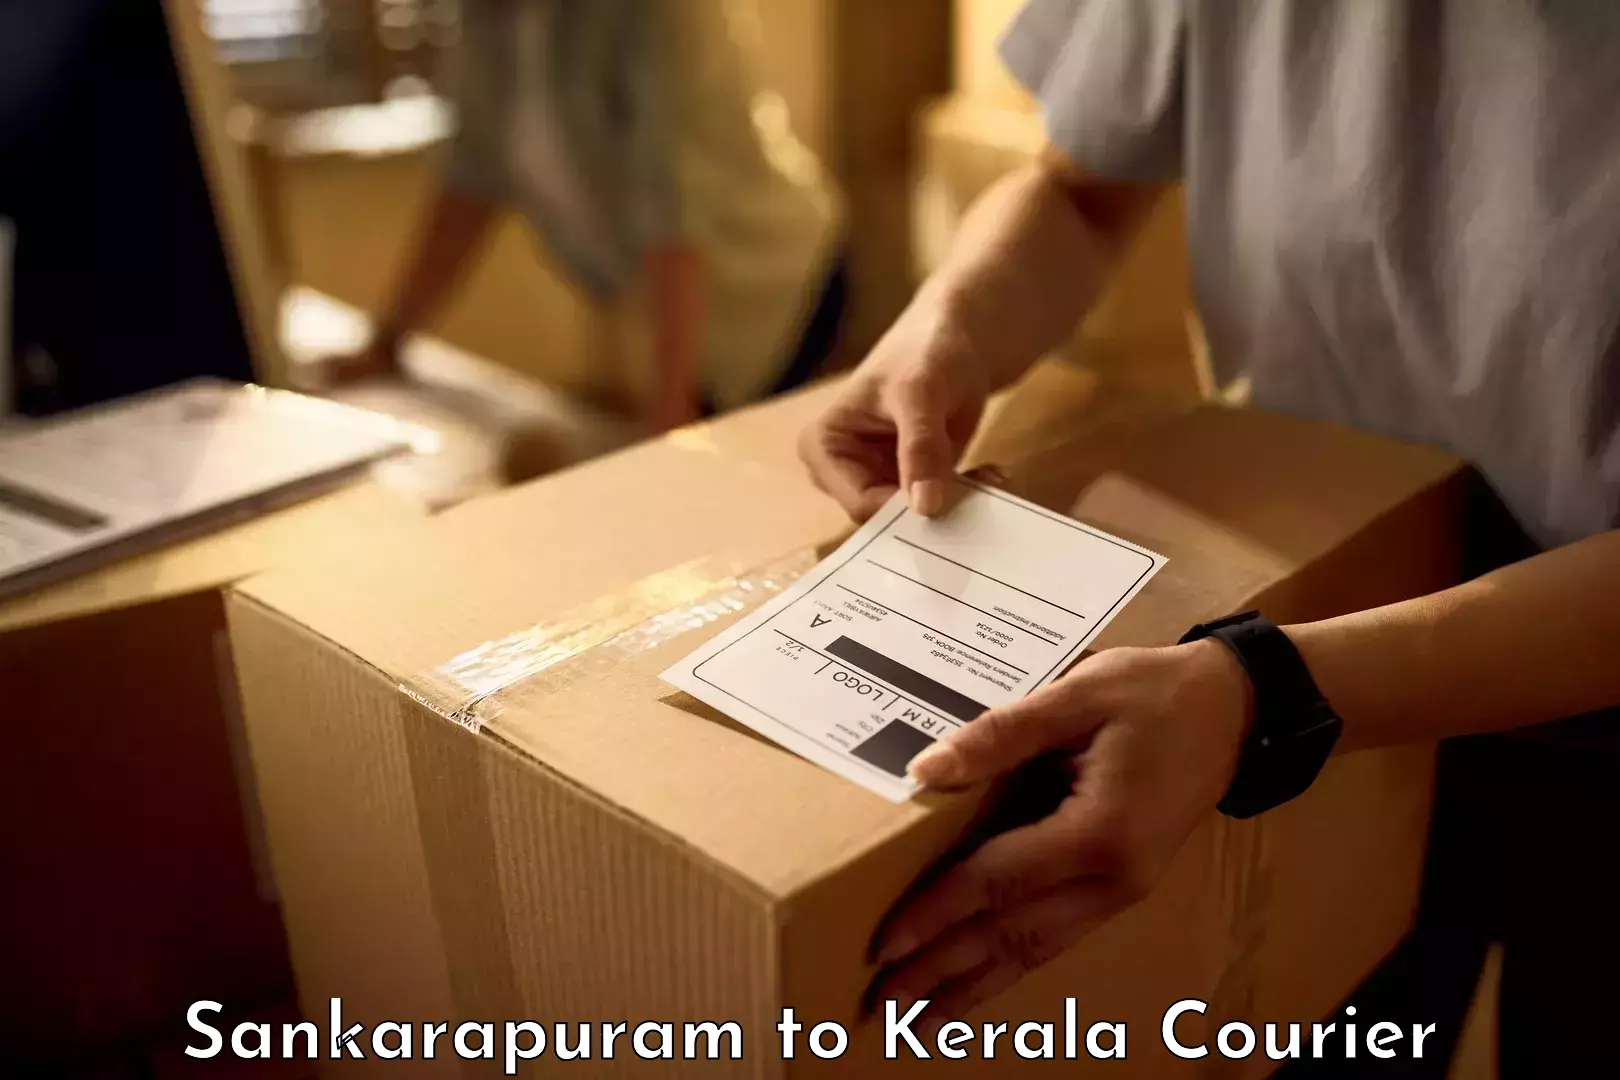 Digital baggage courier Sankarapuram to Kerala